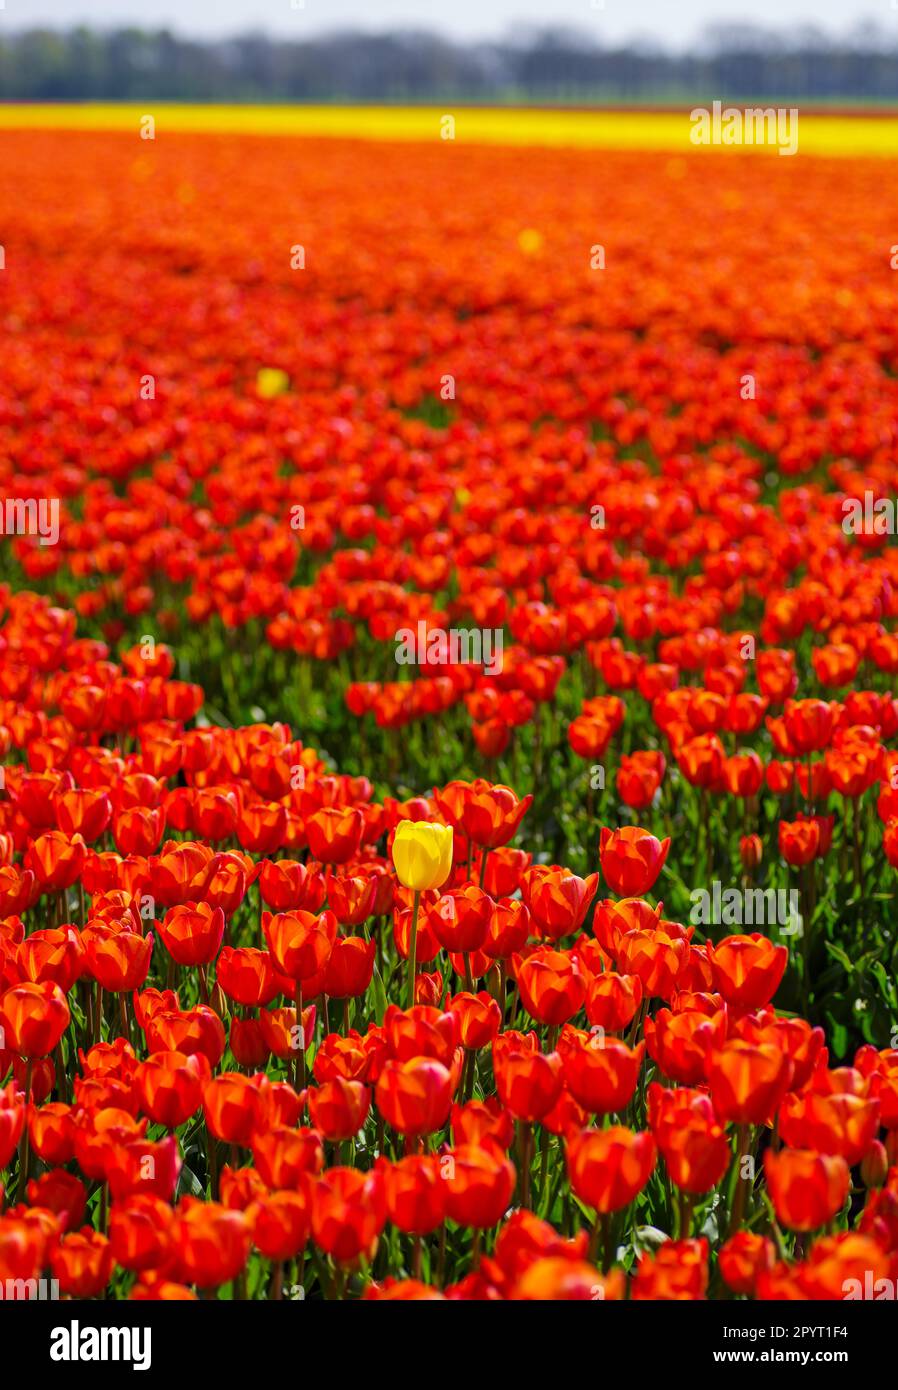 Eine gelbe Tulpe in einem Feld mit roten Tulpen Stockfoto